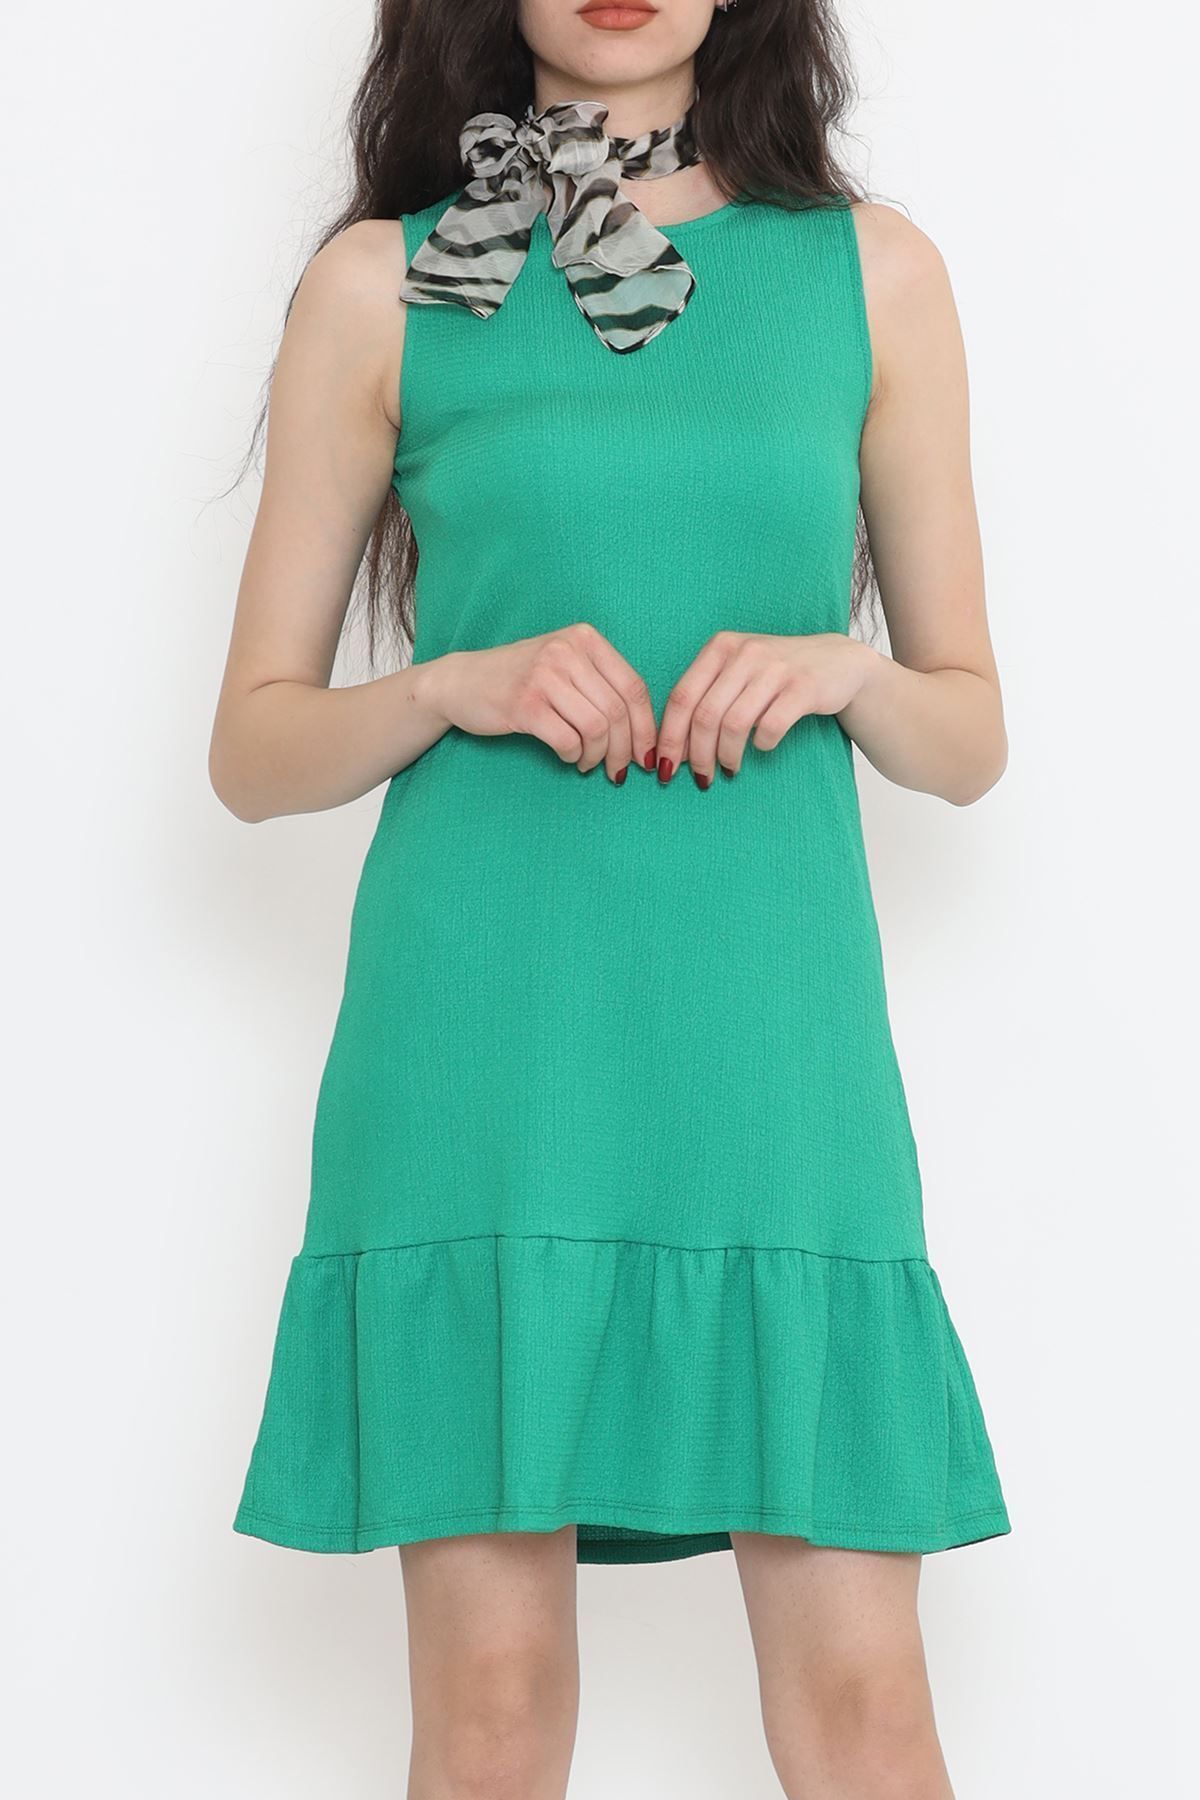 Toptan Bulurum Kolsuz Eteği Fırfırlı Elbise Yeşil - 949.1247.